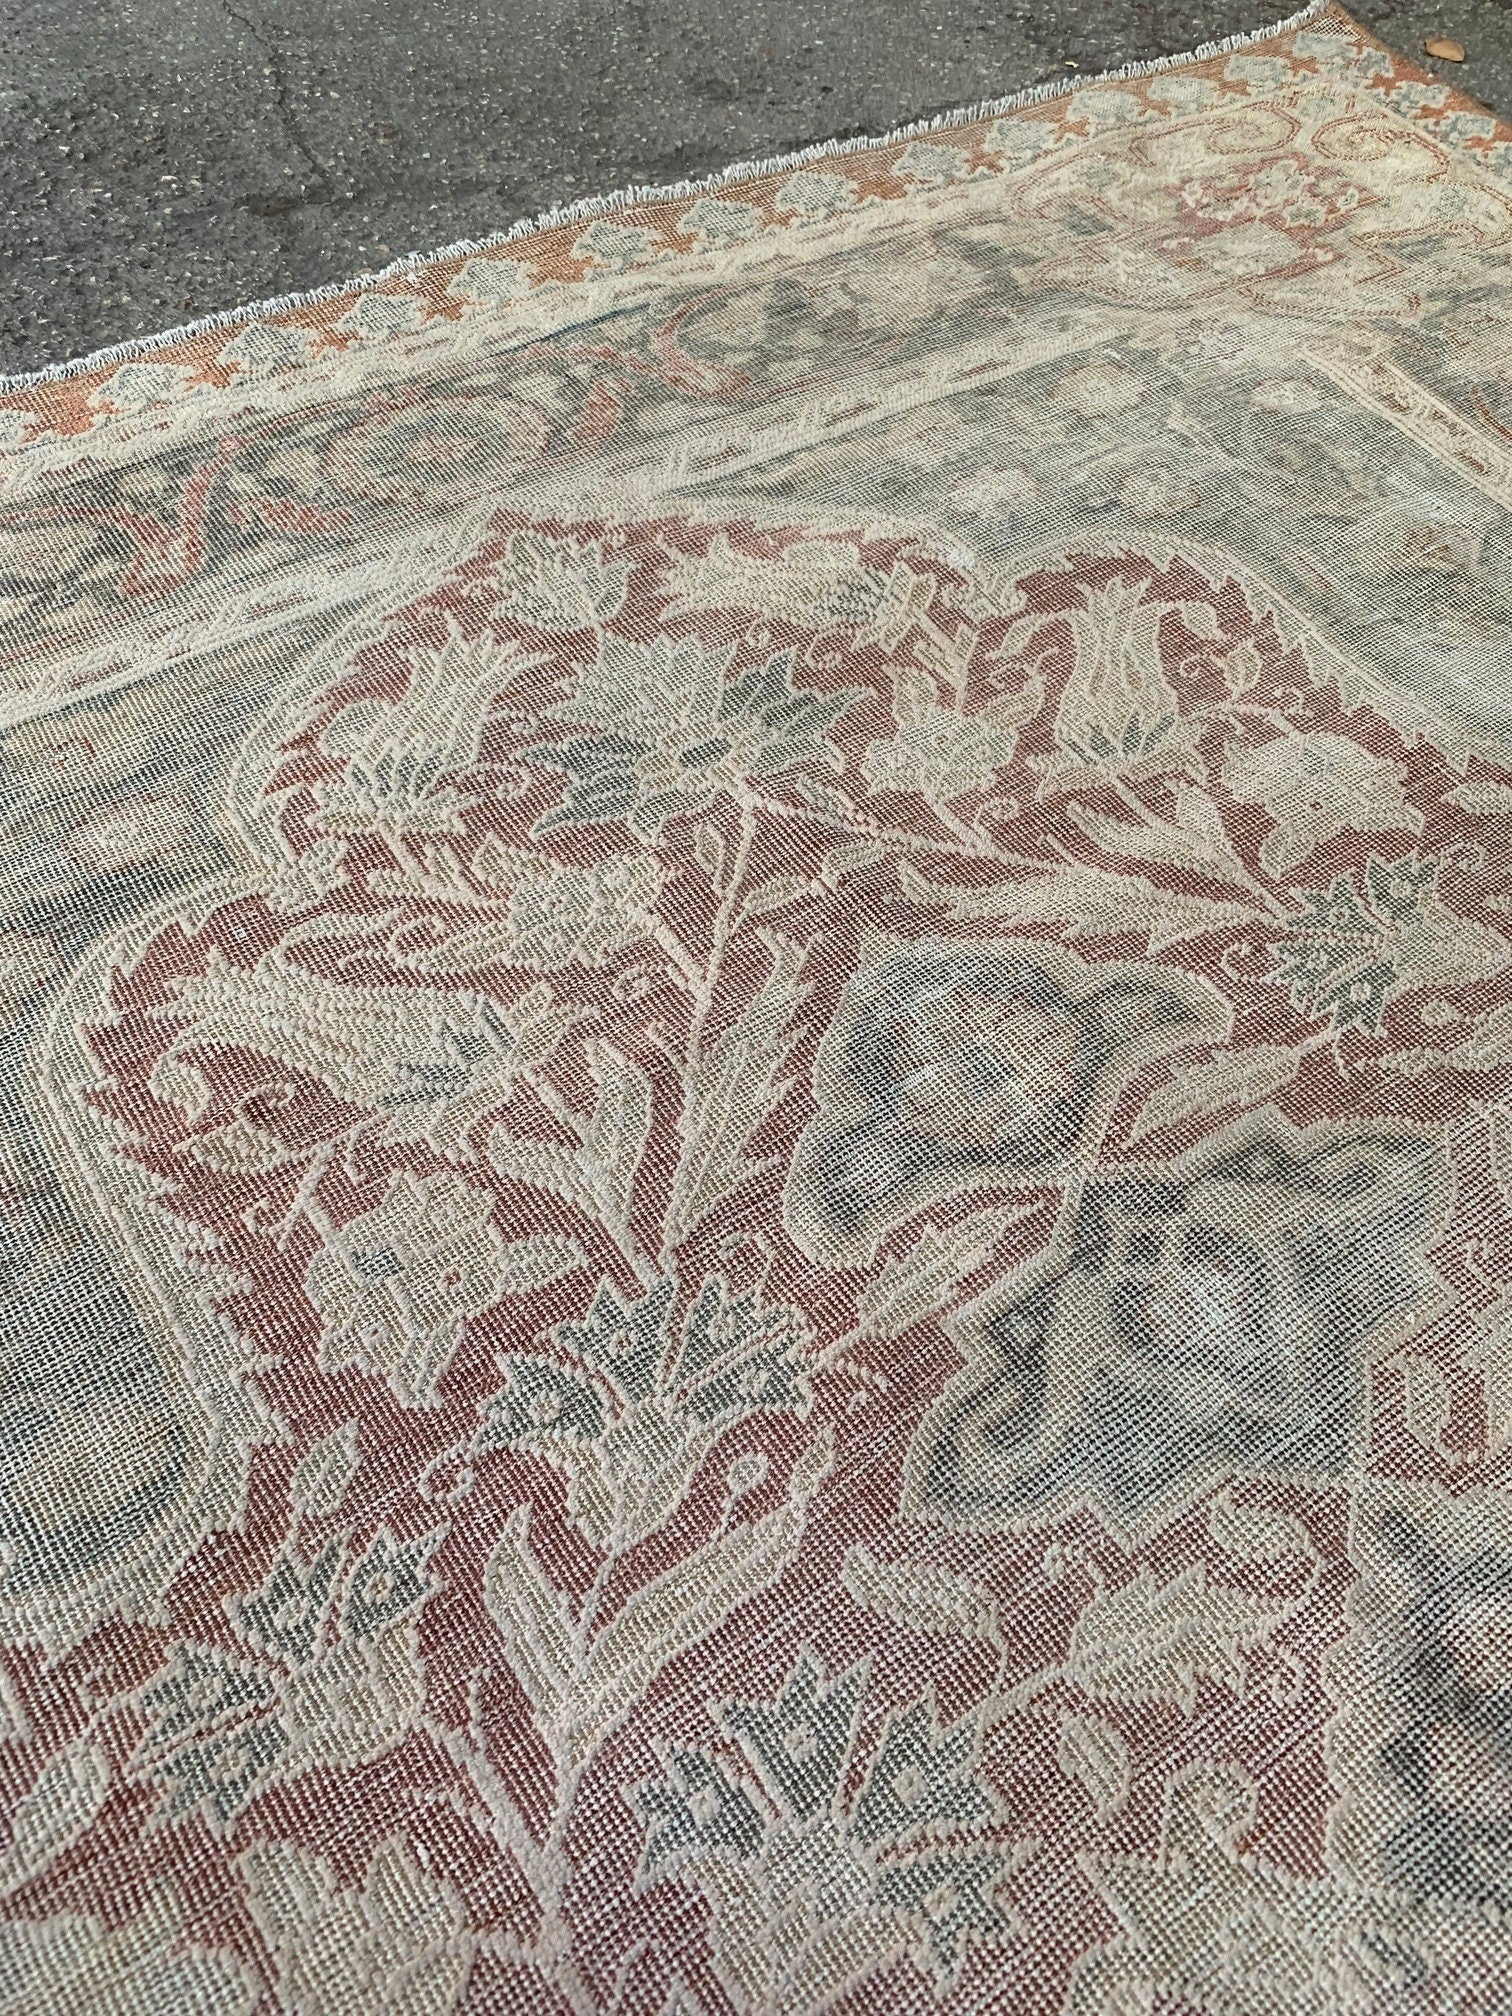 Oriental silk carpet, 4.4x6.4 ft, F686